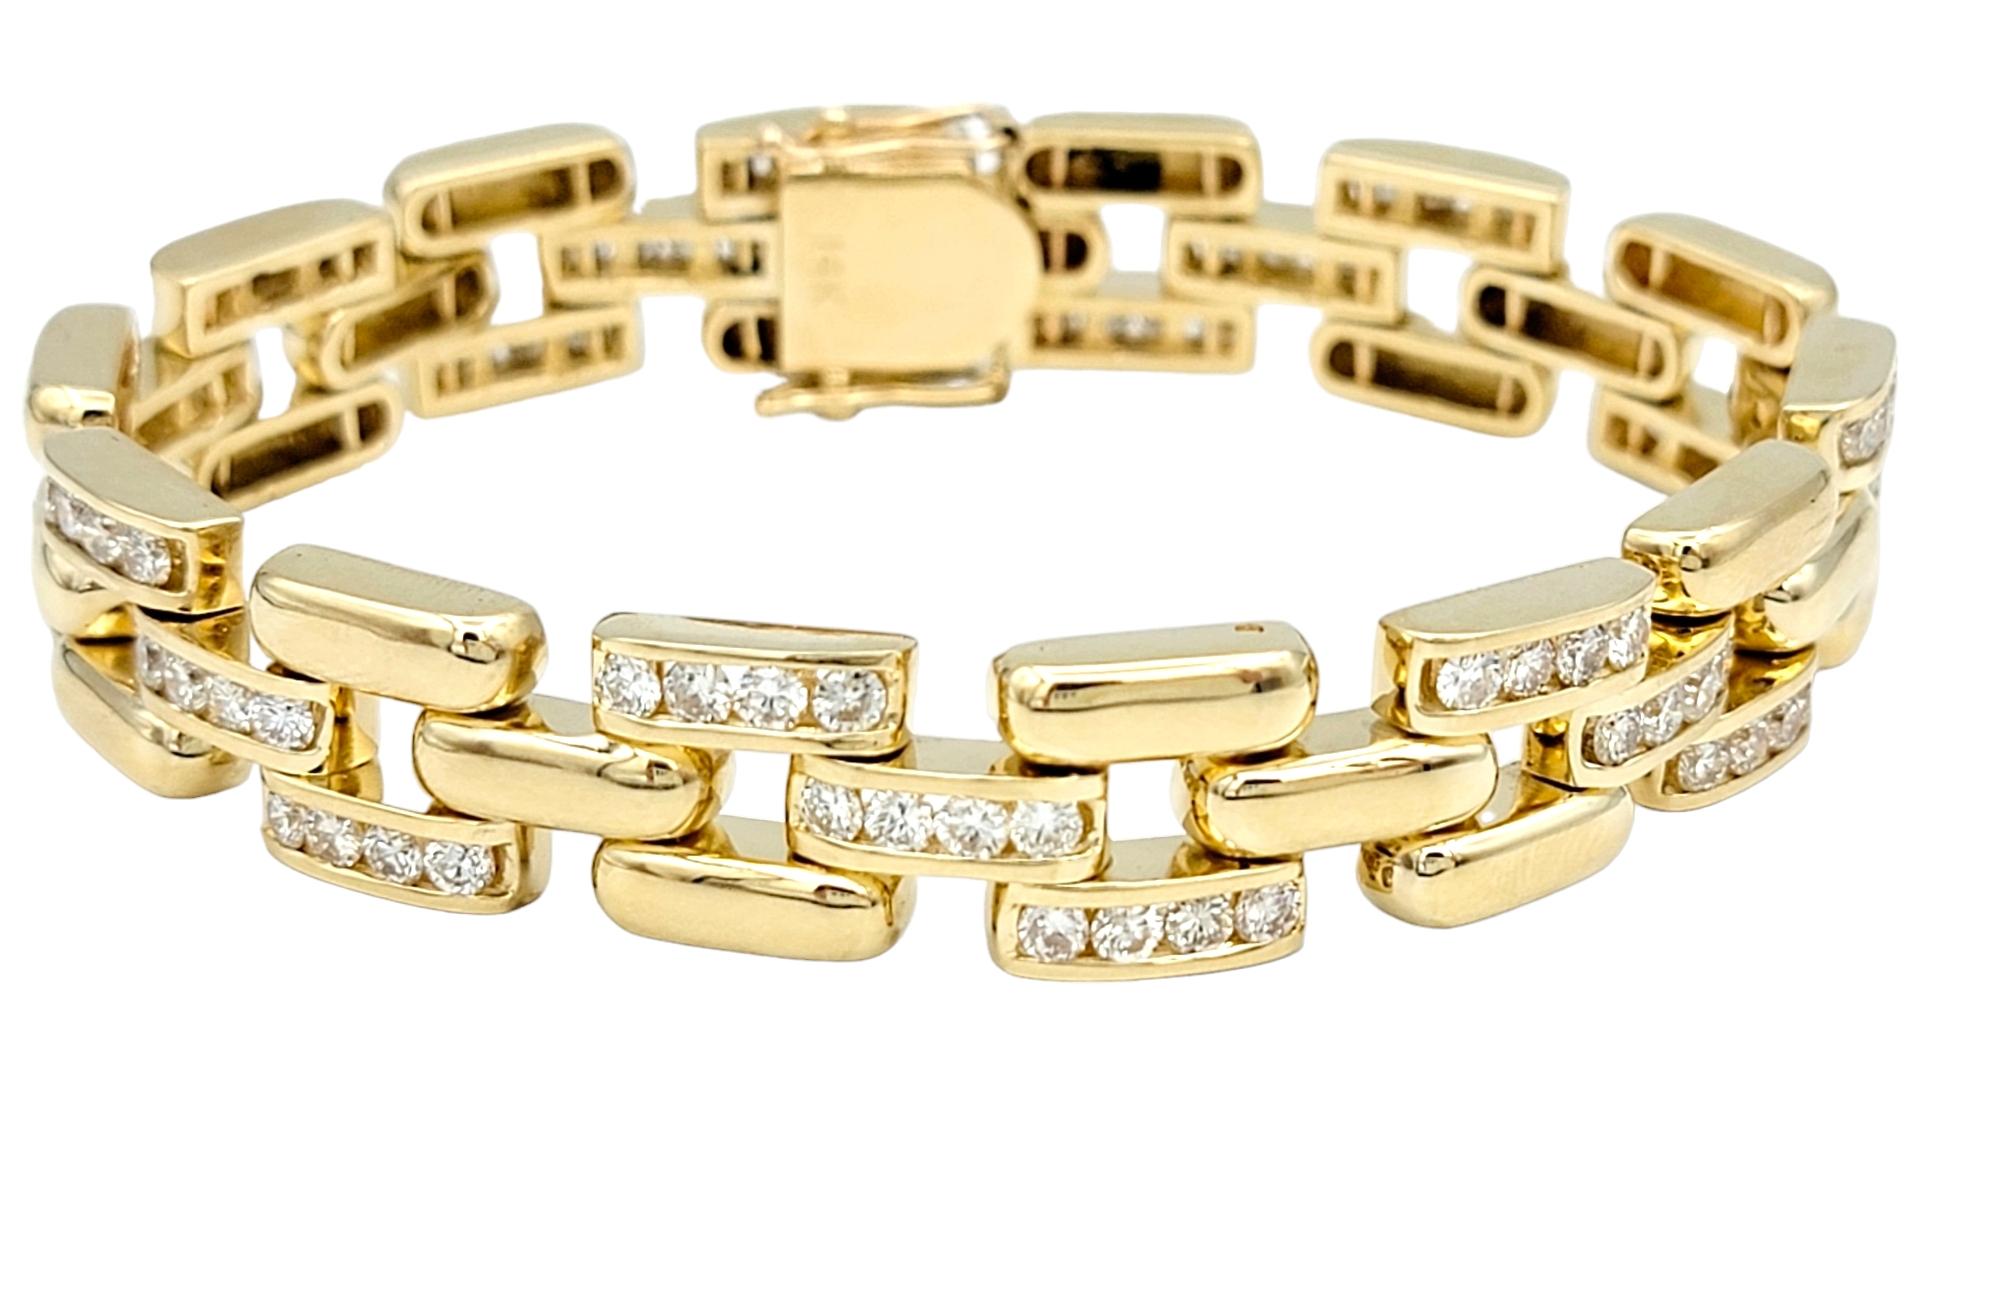 Lassen Sie sich von der zeitlosen Anziehungskraft des goldenen Panther-Gliederarmbands verzaubern, einer meisterhaften Kreation im prächtigen Glanz von 14 Karat Gelbgold. Dieses Armband strahlt mit seinem unverwechselbaren Panther-Glieder-Design